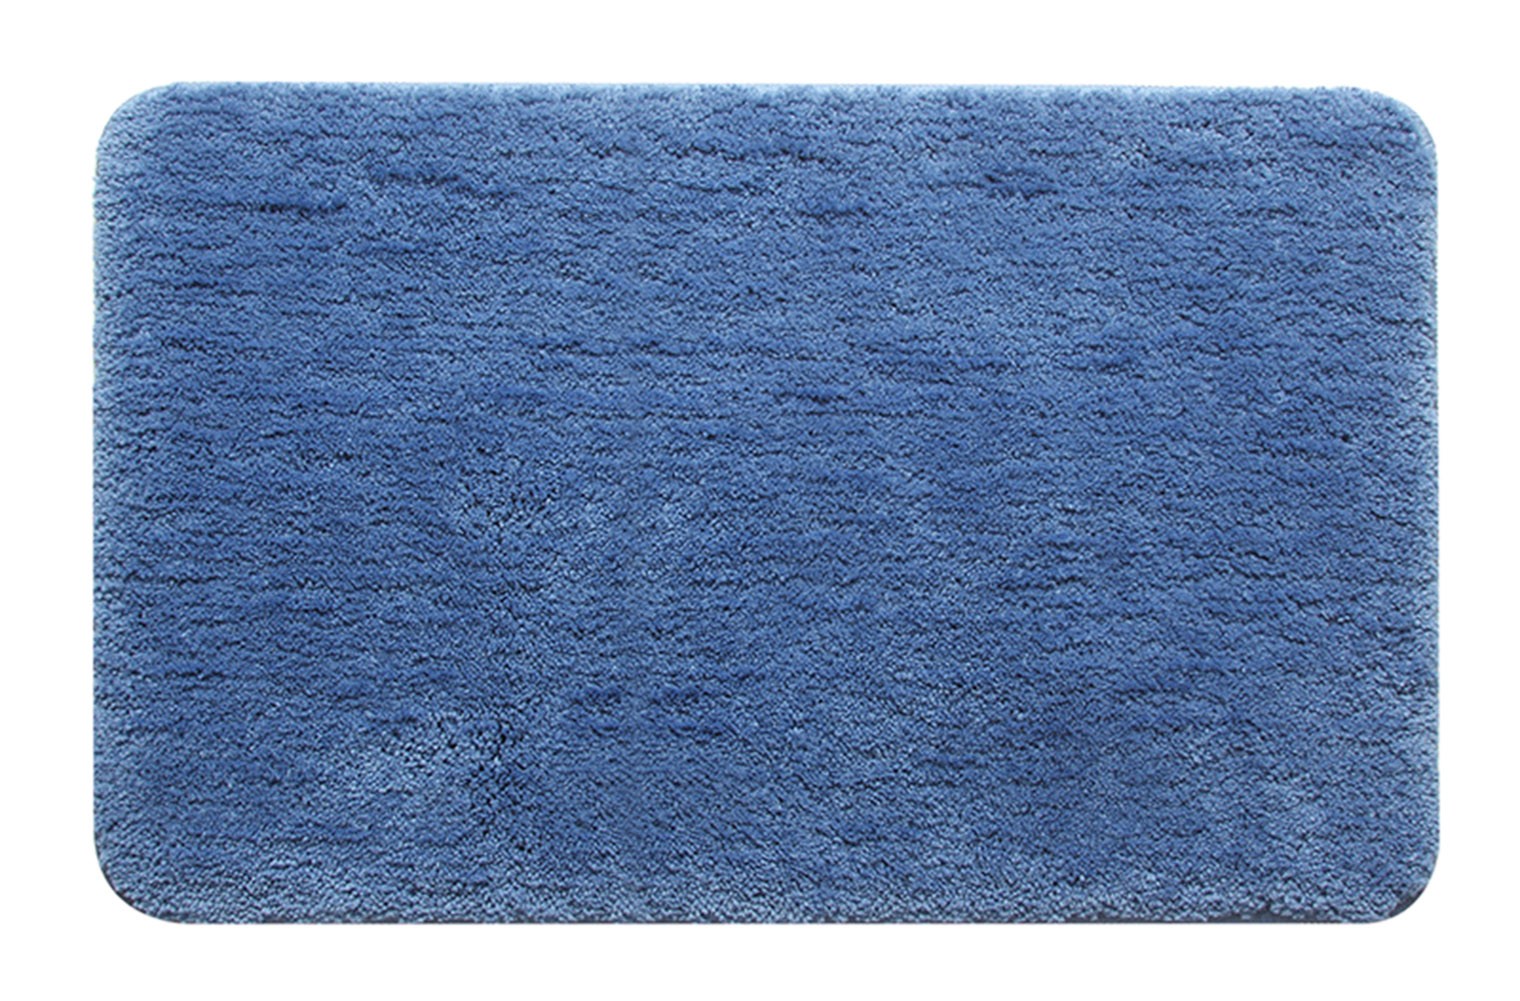 [Solid] Home Decor Rug Bathroom/Living Room Doormat Indoor/Outdoor Mat,Blue,15.75x23.62 inches